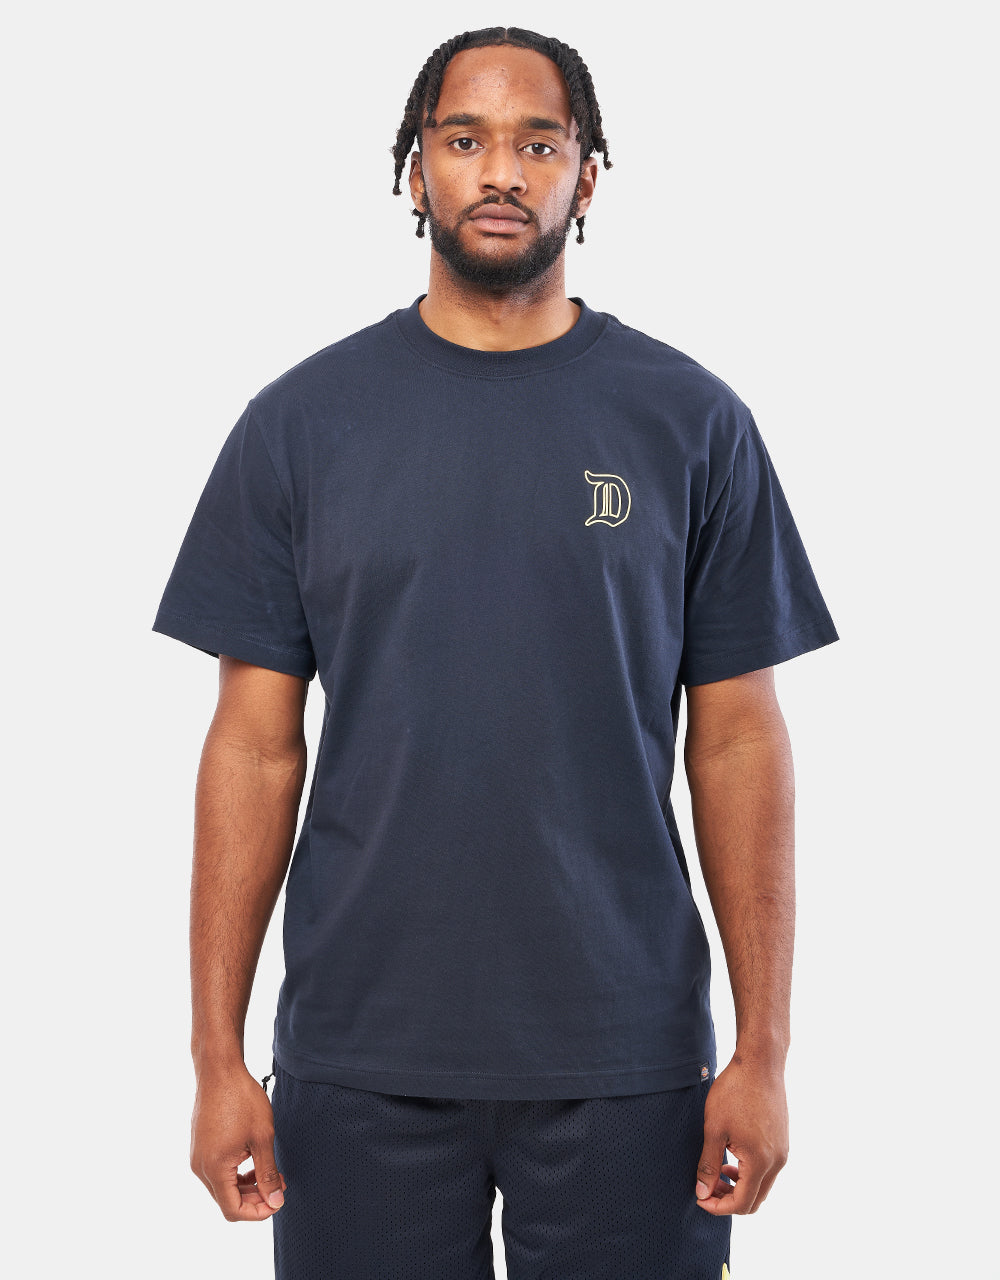 Dickies x Guy Mariano Graphic T-Shirt - Dark Navy